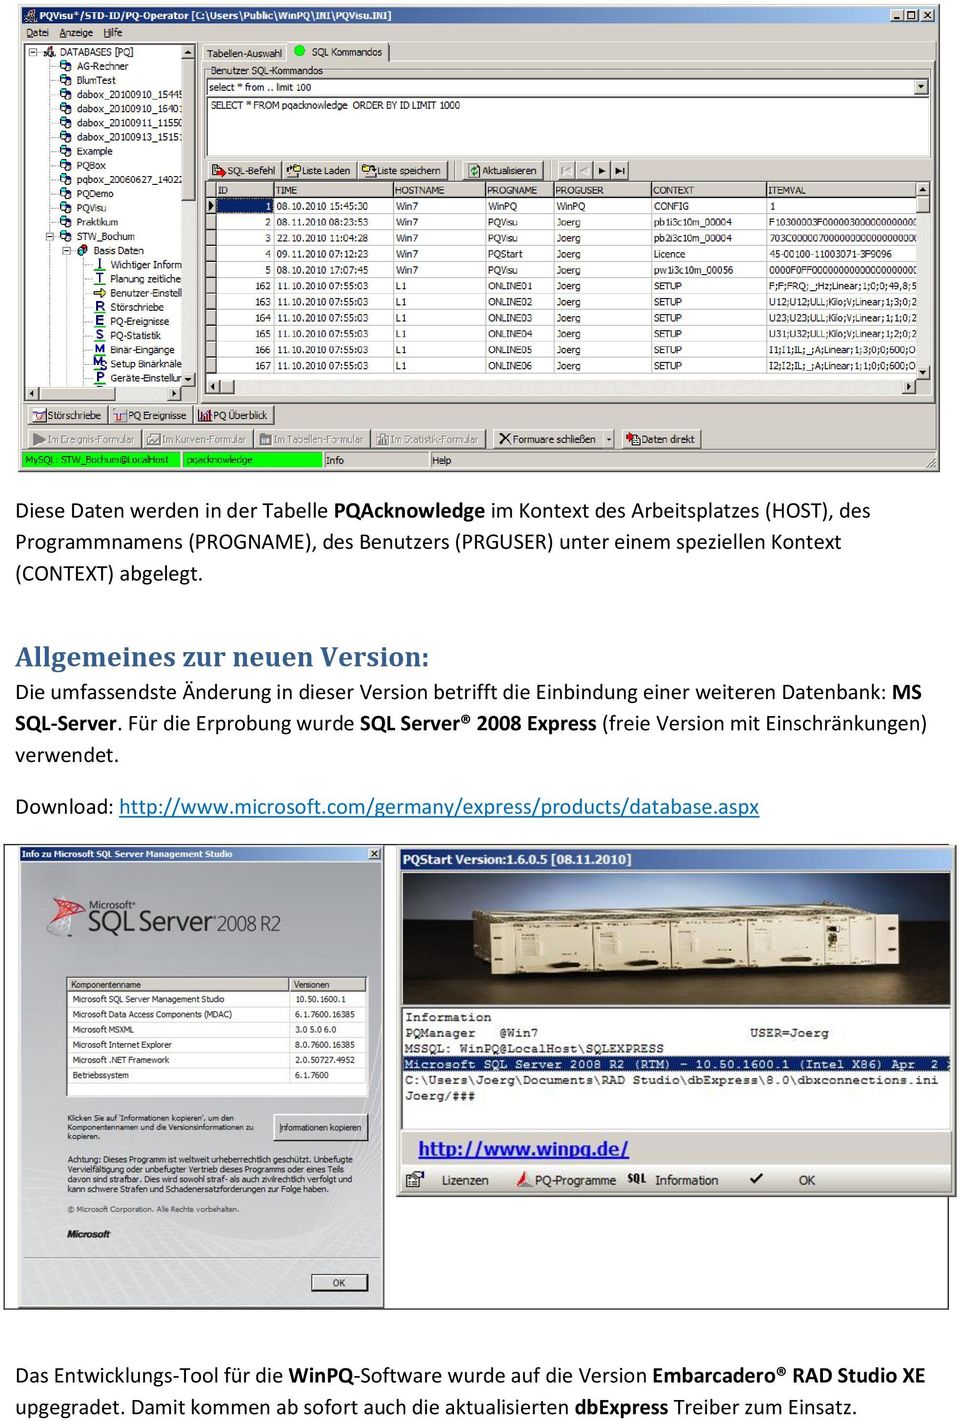 Für die Erprobung wurde SQL Server 2008 Express (freie Version mit Einschränkungen) verwendet. Download: http://www.microsoft.com/germany/express/products/database.